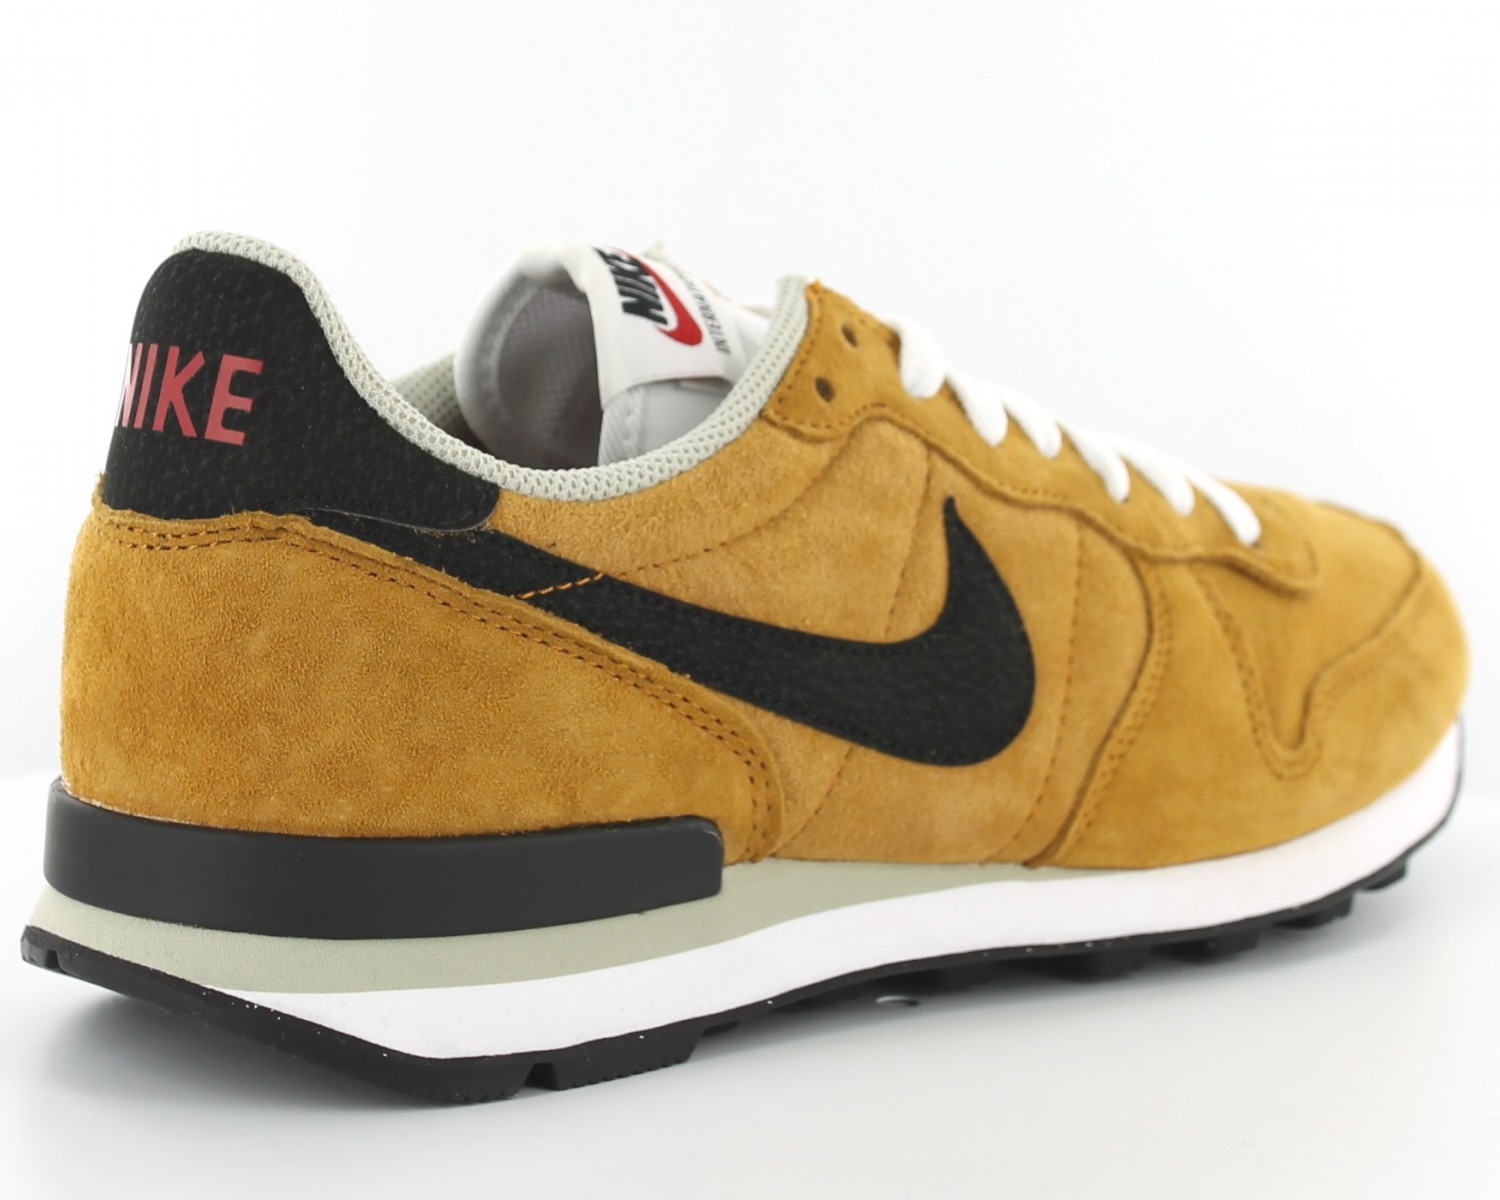 Nike cuir beige BEIGE/NOIR 631755-700